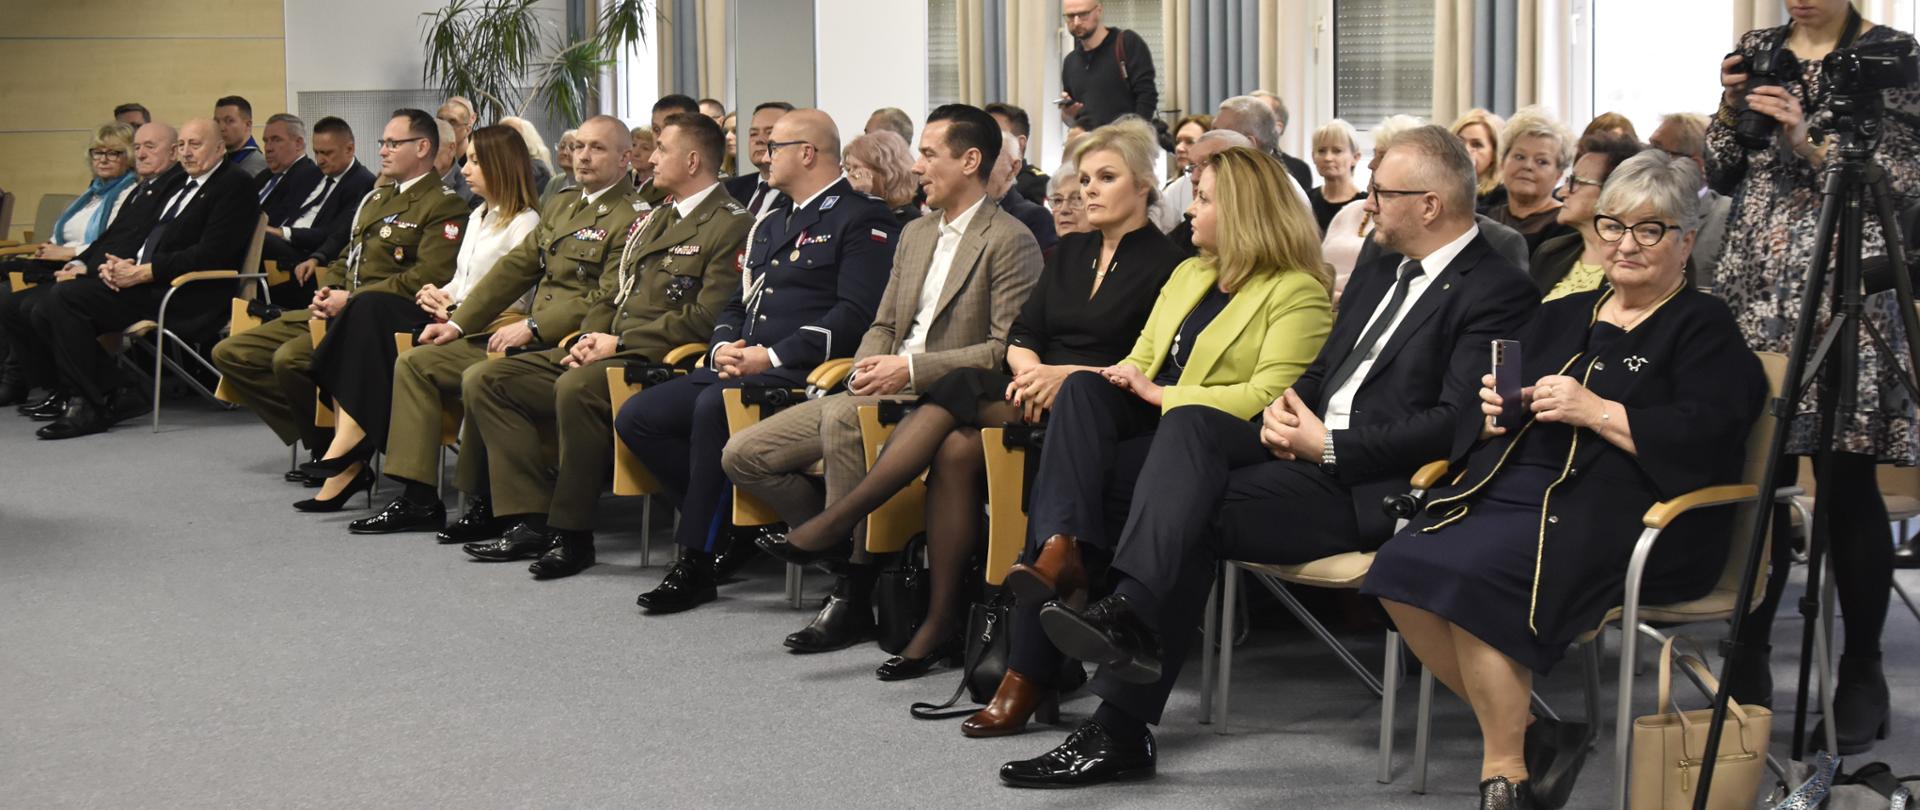 Wojewoda Radosław Król uczestniczył w Spotkaniu Noworocznym zorganizowanym przez Stowarzyszenie Rodzina Katyńska. 